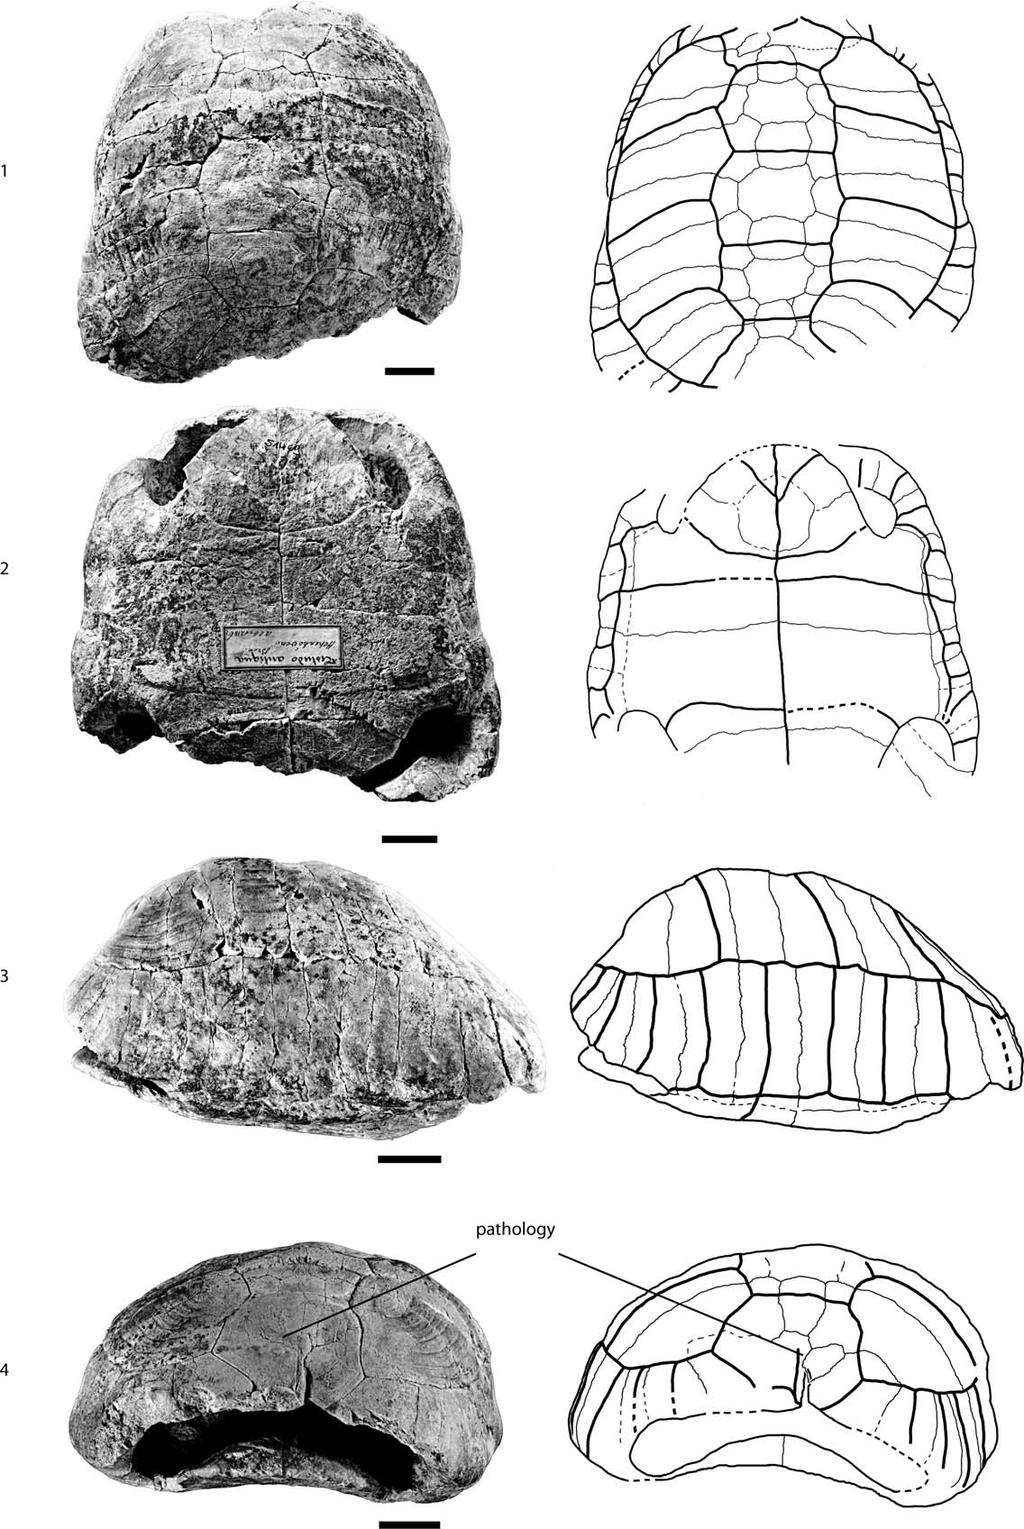 958 JOURNAL OF PALEONTOLOGY, V. 88, NO. 5, 2014 FIGURE 8 SMNS 4450, Testudo antiqua, middle Miocene of Hohenhöwen, Germany.